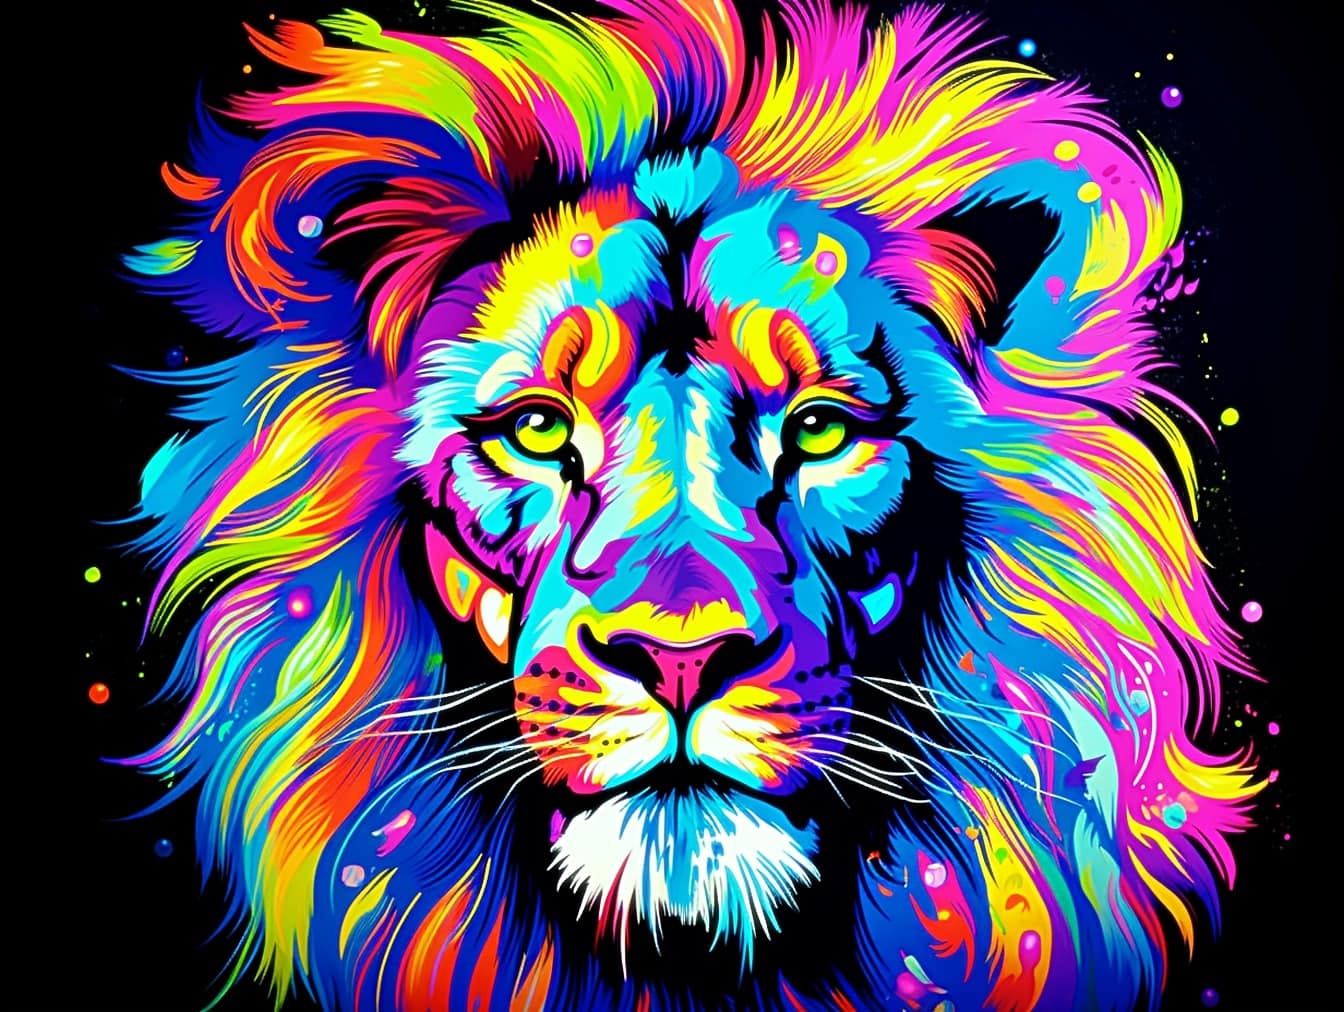 Grafica pop art colorata del leone con criniera colorata su sfondo nero